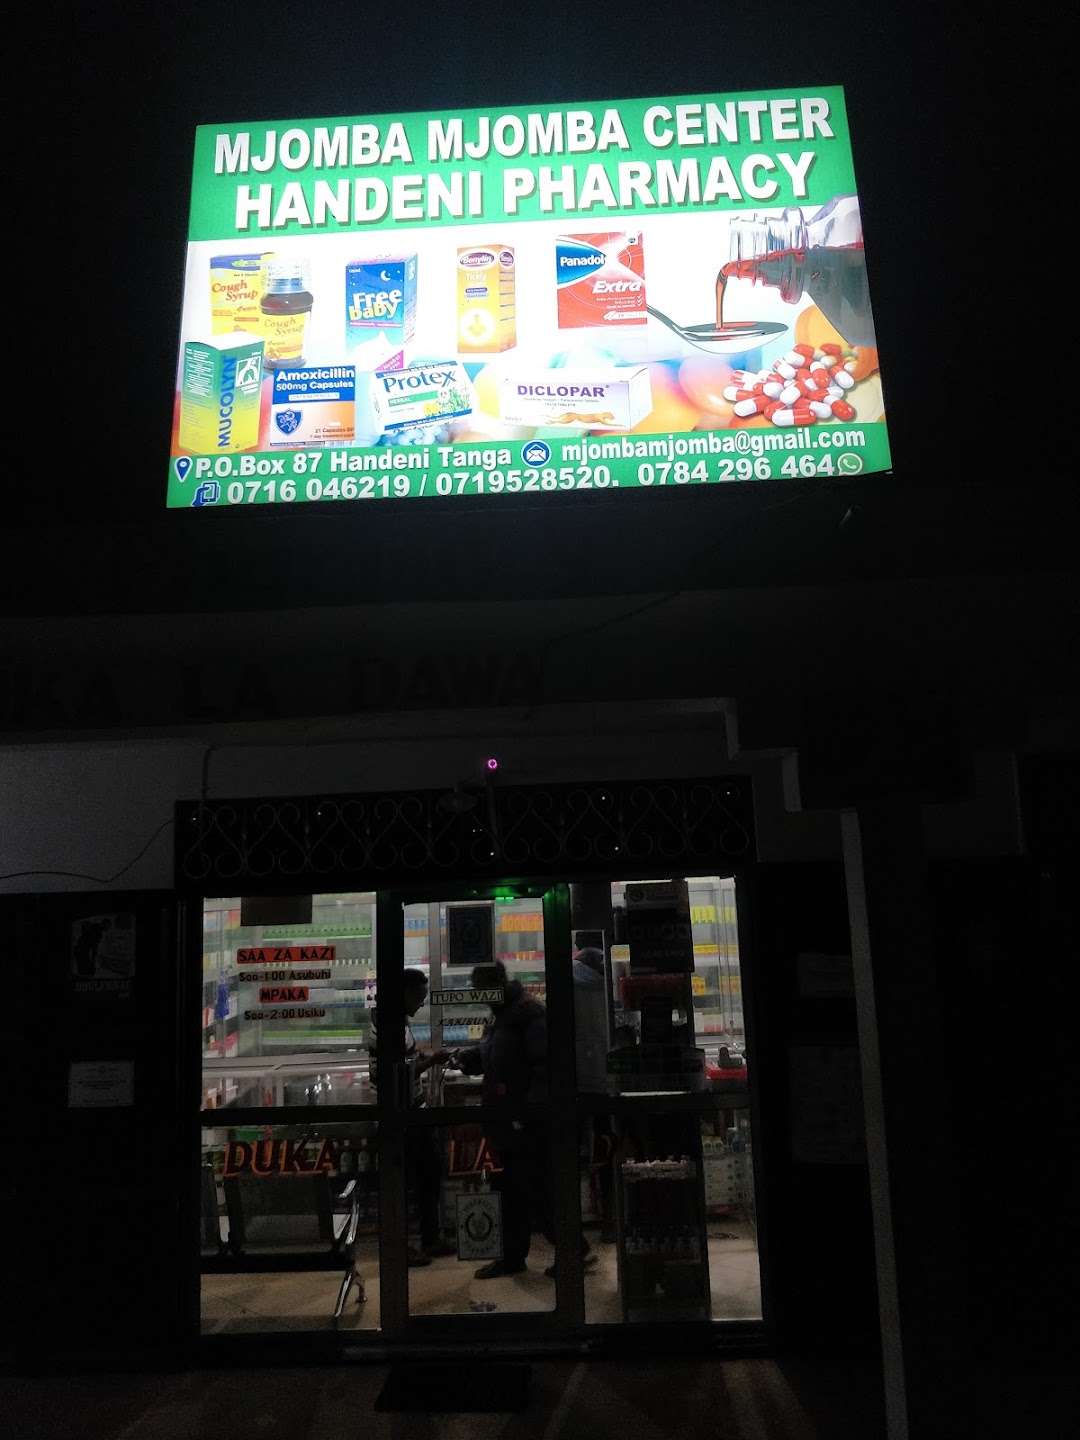 Handeni Pharmacy (Mjomba Mjomba Center)